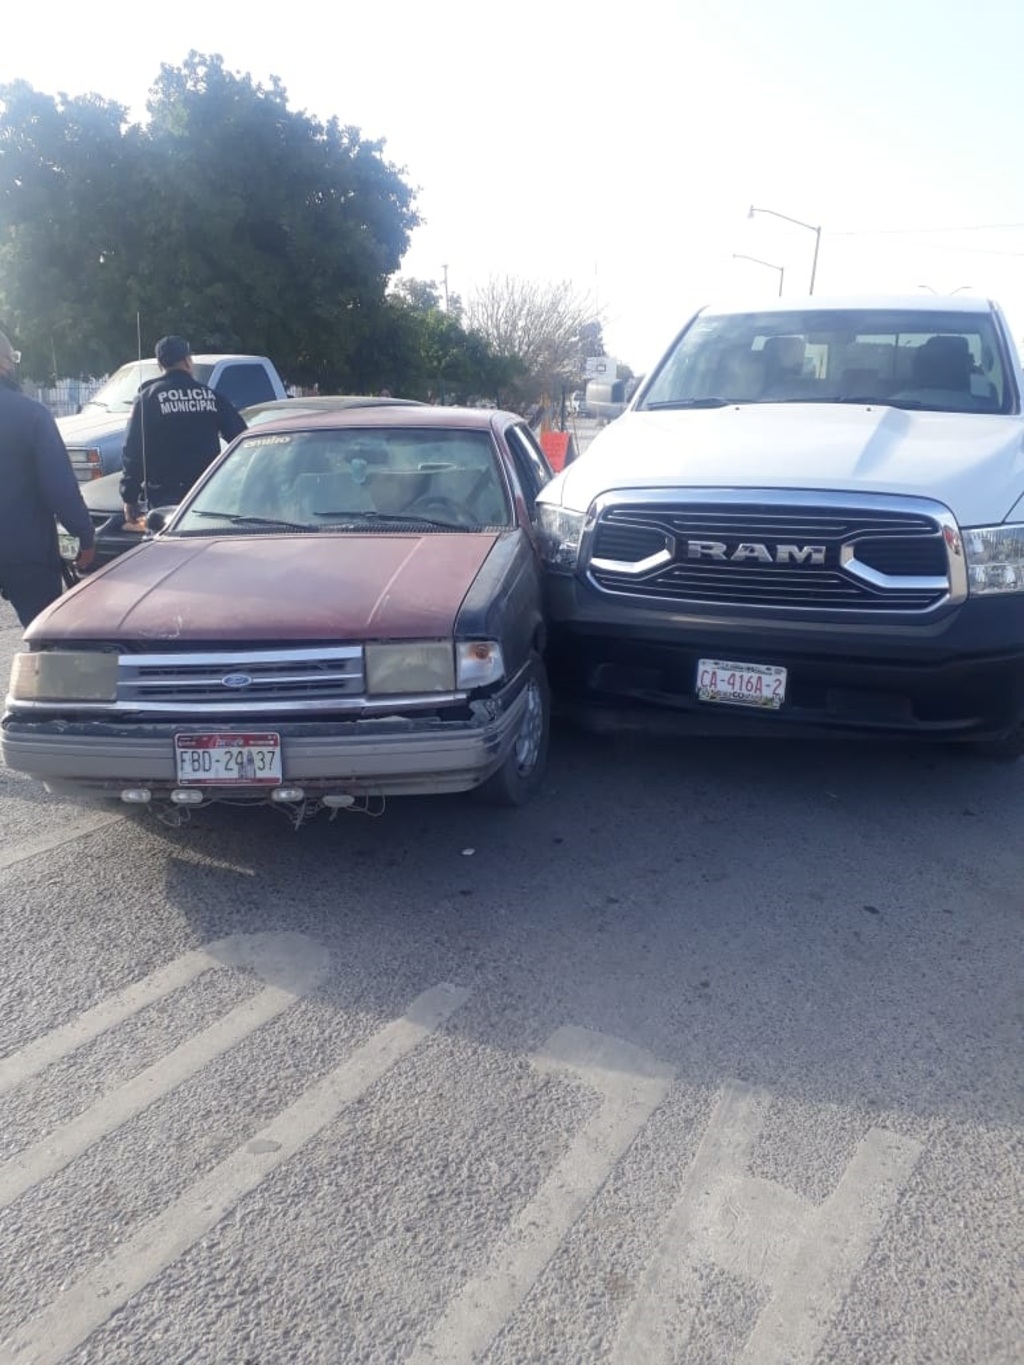 Un vehículo sedán Ford modelo 1989, conducido por Guillermo, de 70 años, invadió el carril de una camioneta Dodge RAM.